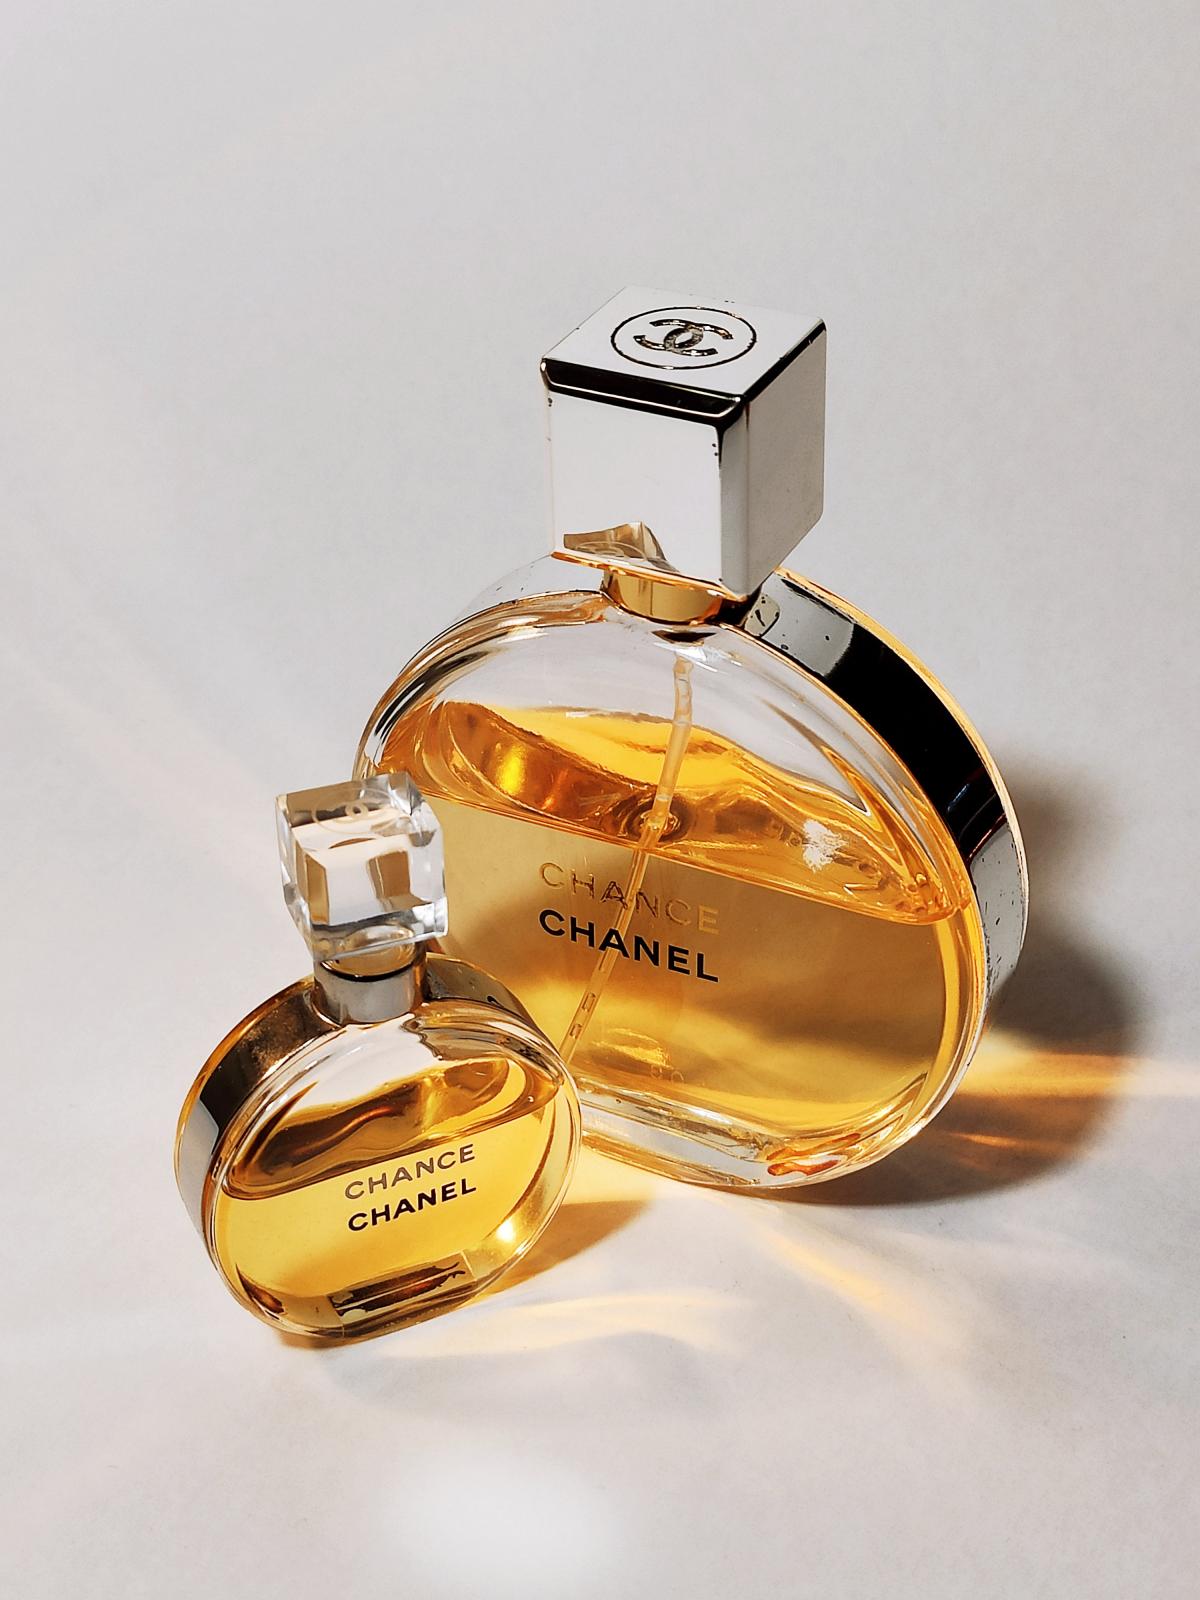 Chance Eau de Parfum Chanel parfum - un parfum pour femme 2005